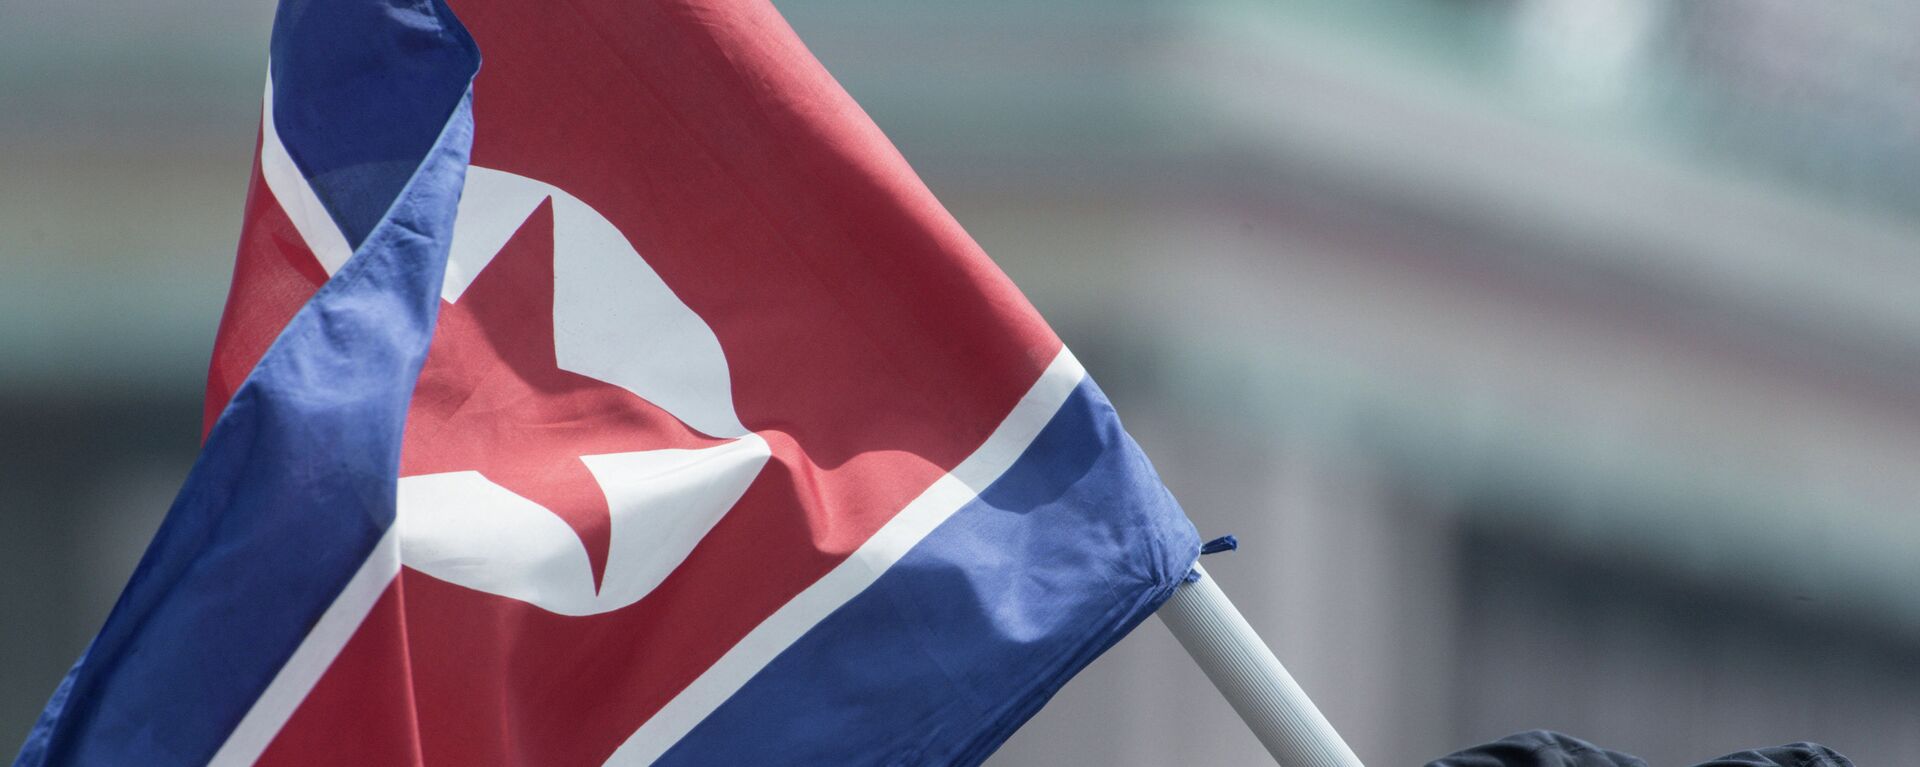 Kuzey Kore bayrağı - Sputnik Türkiye, 1920, 06.04.2021